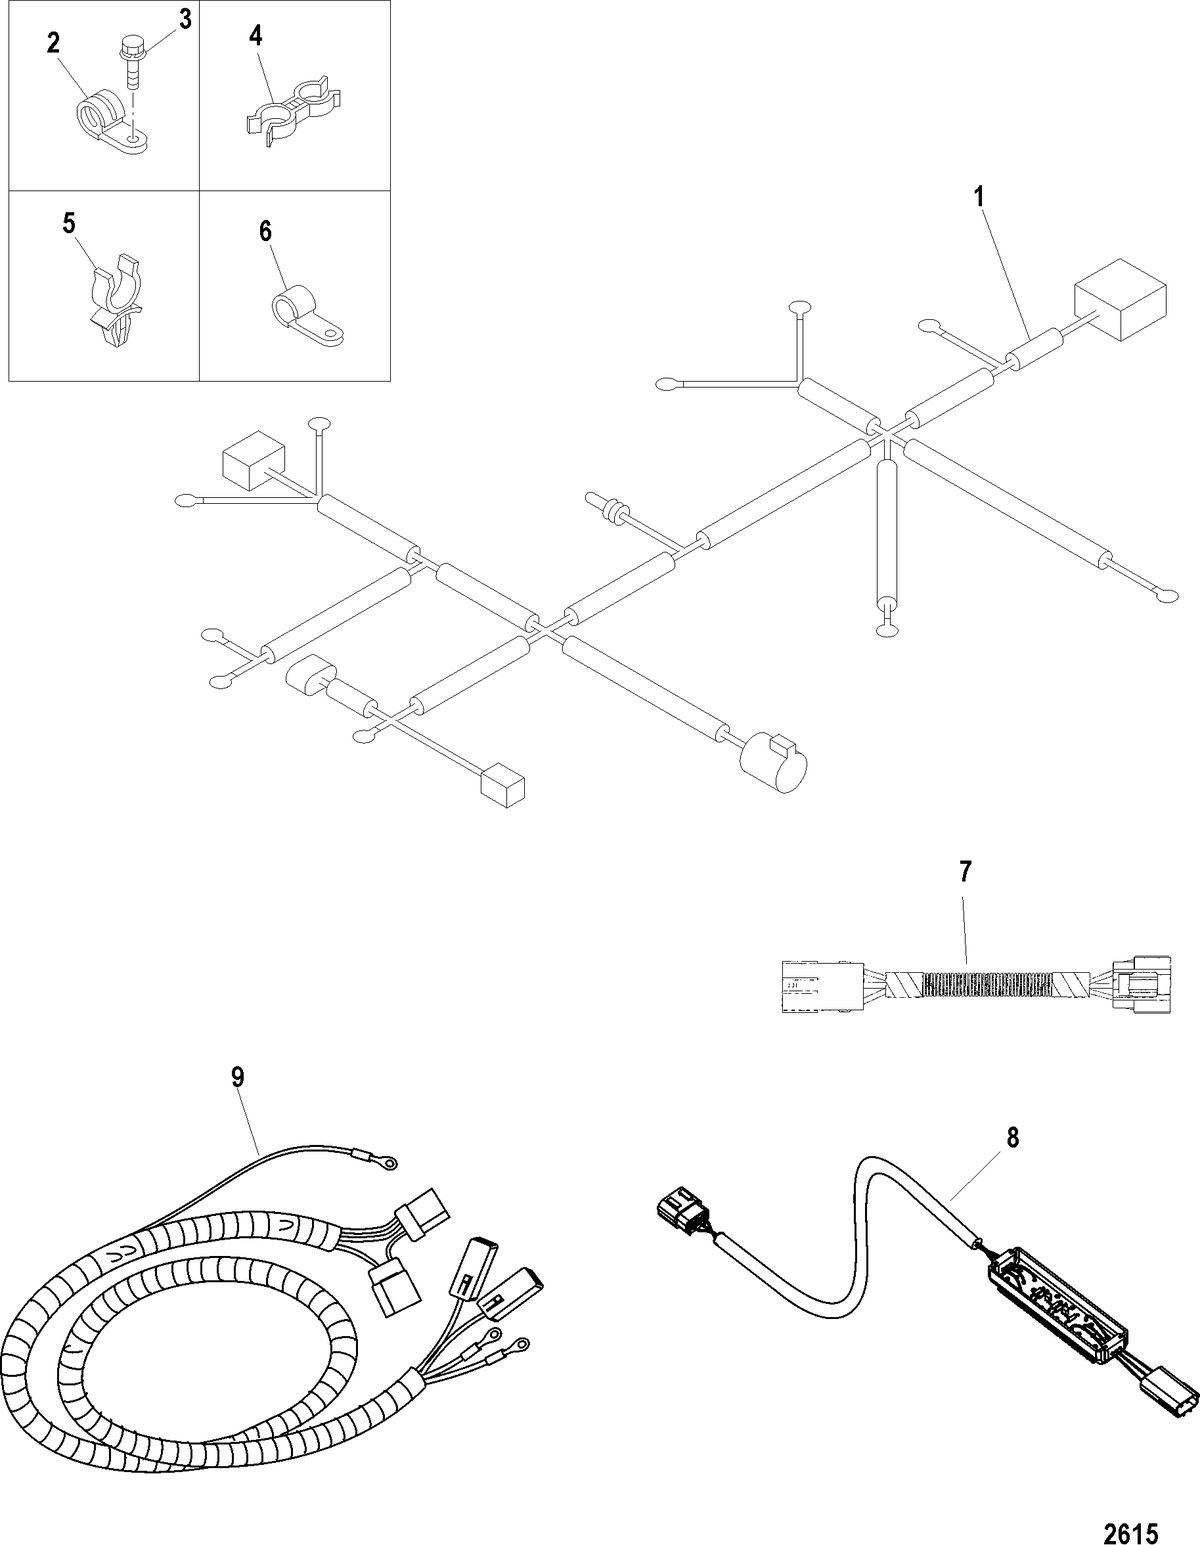 MERCRUISER CUMMINS/MERCRUSER DIESEL 1.7L-120 Wiring Harness and Clips